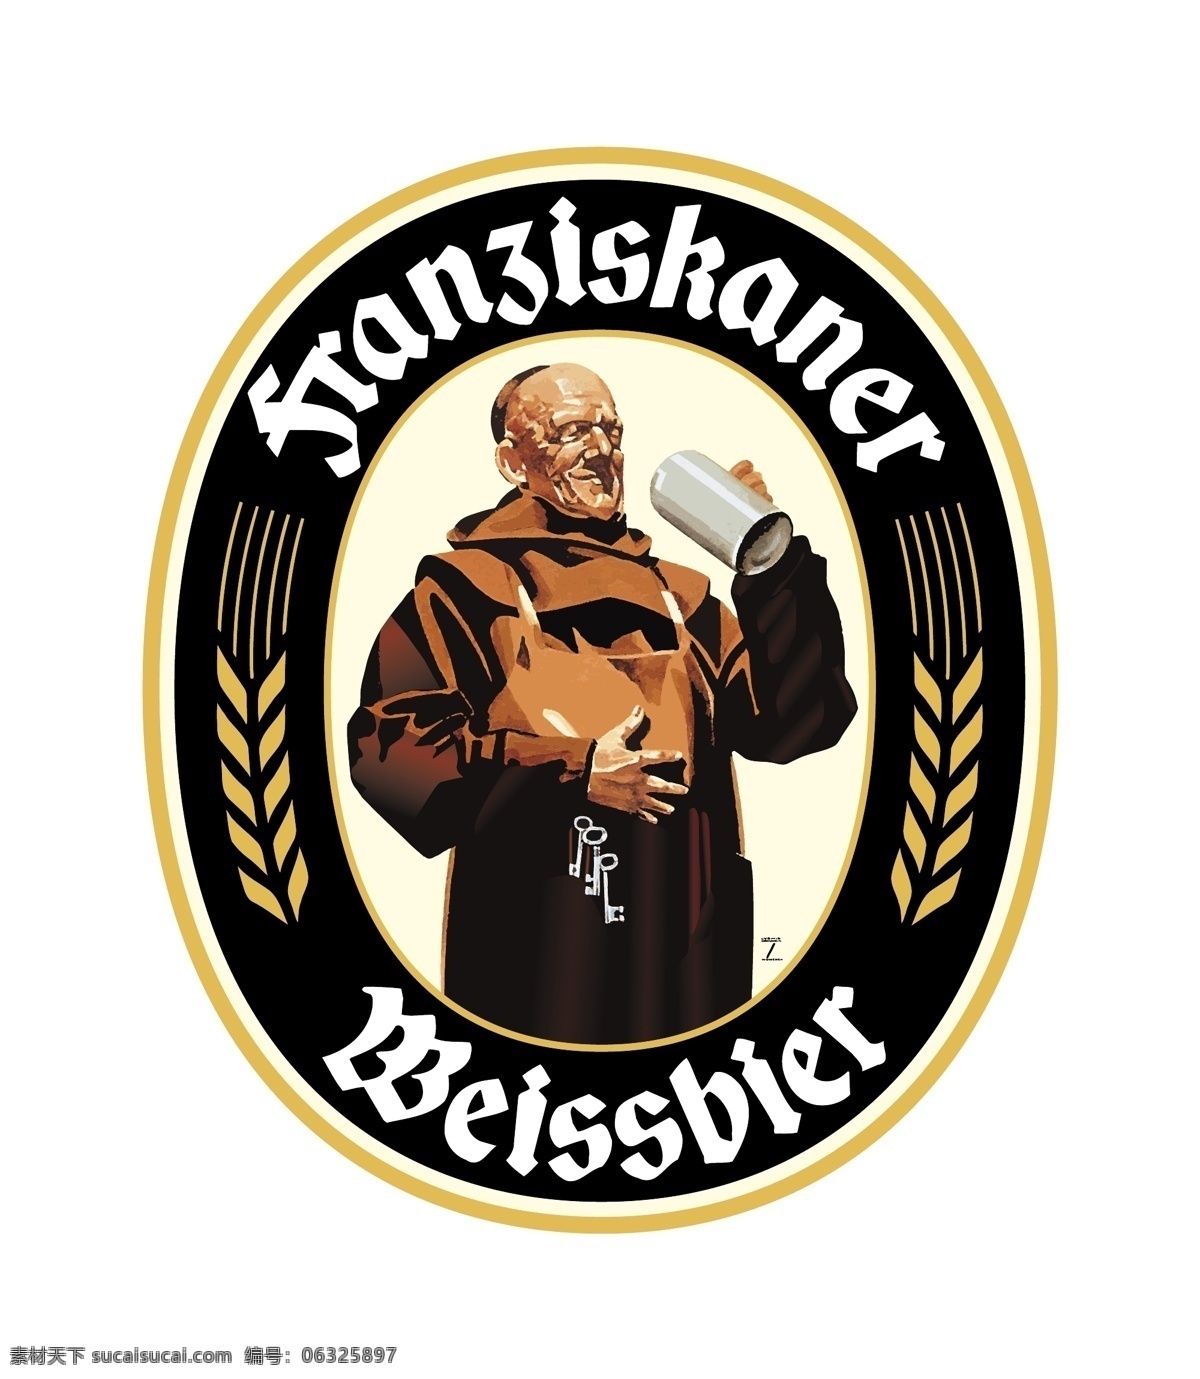 弗朗 奇 斯 卡娜 白 啤 自由 啤酒 标志 标识 psd源文件 logo设计